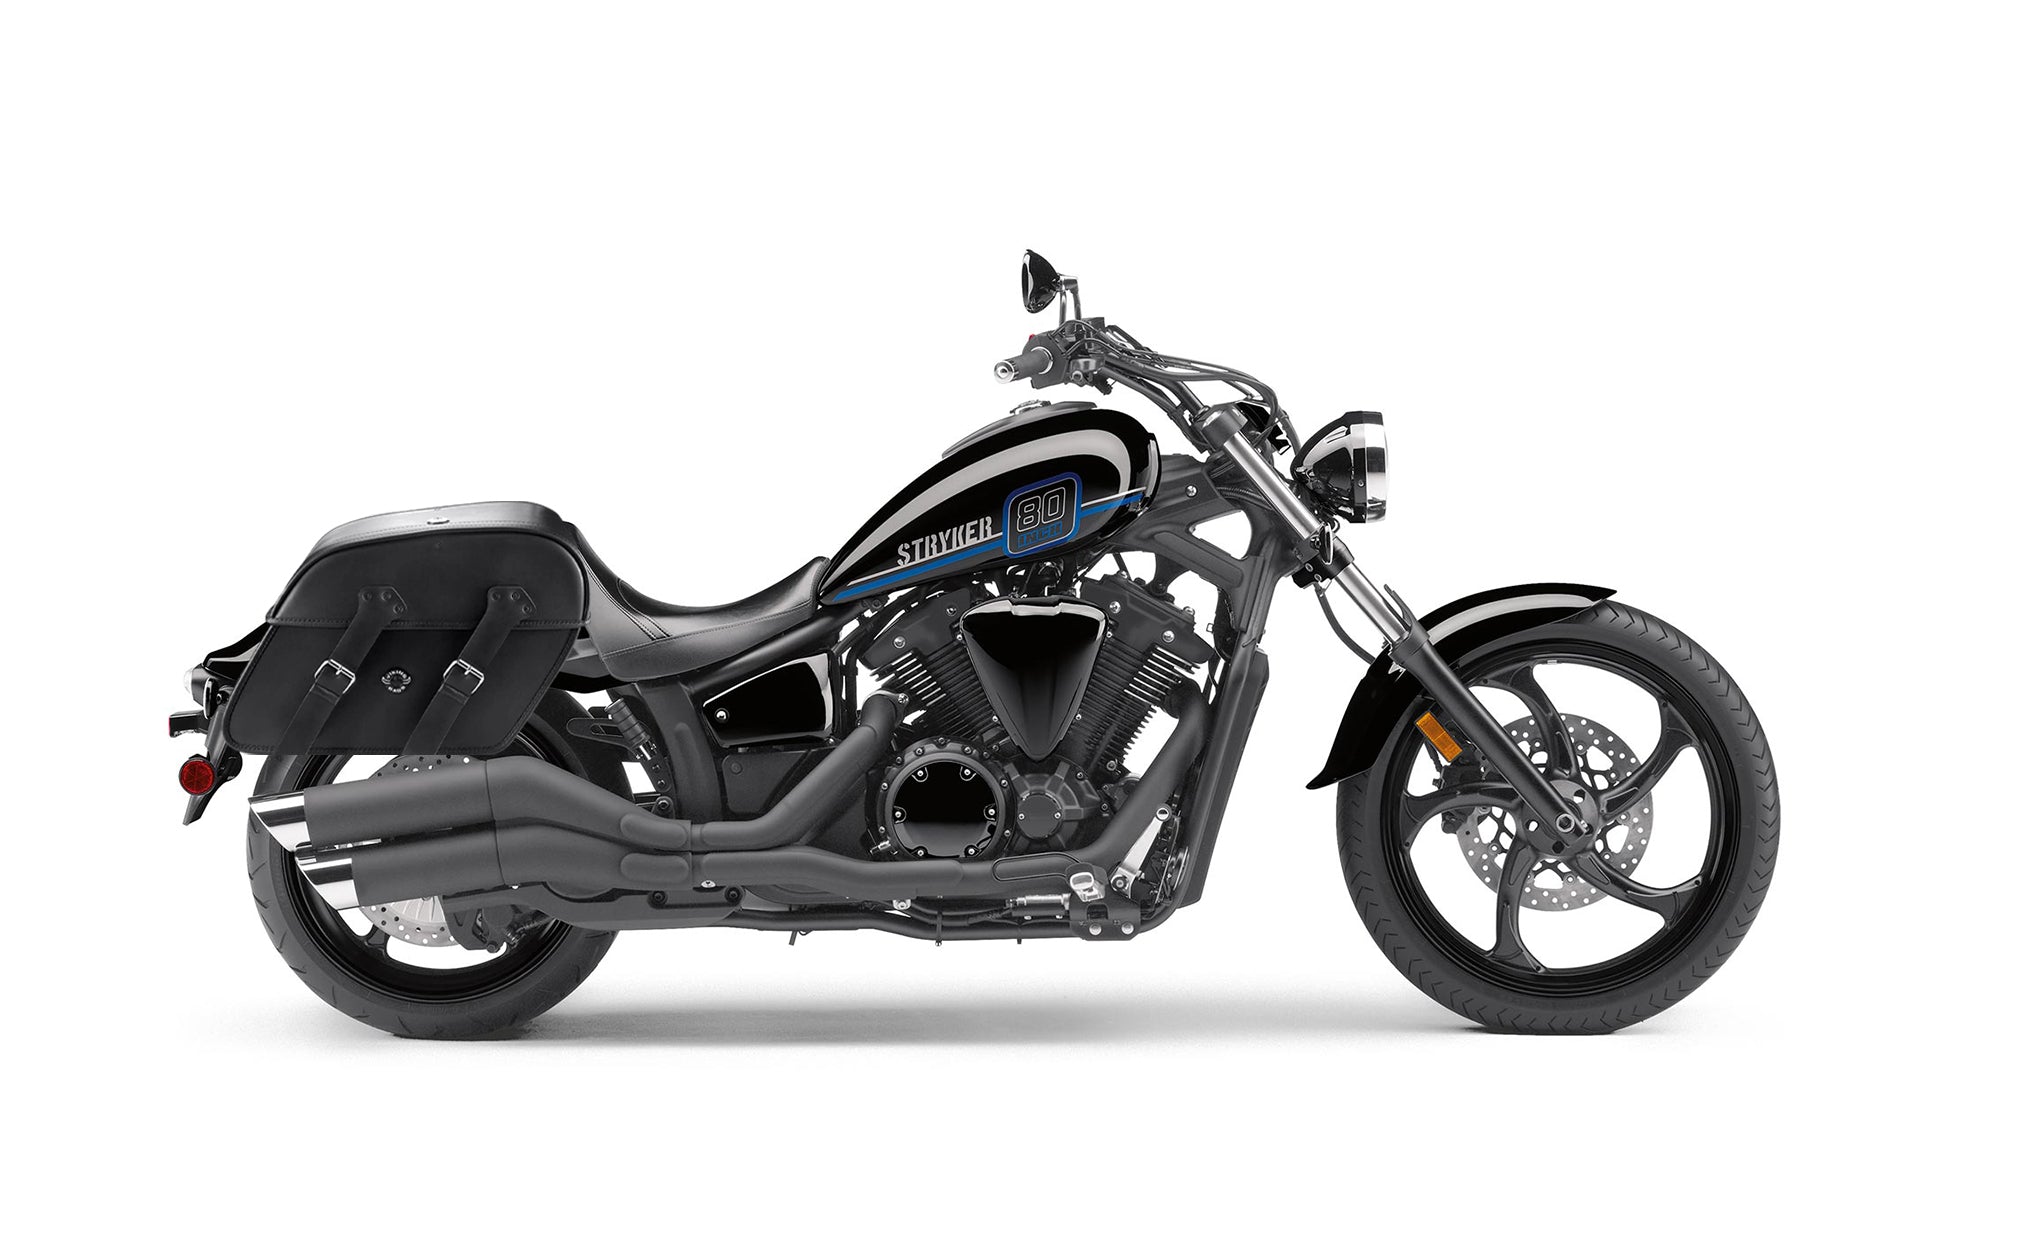 Viking Raven Large Yamaha Stryker Motorcycle Leather Saddlebags on Bike Photo @expand